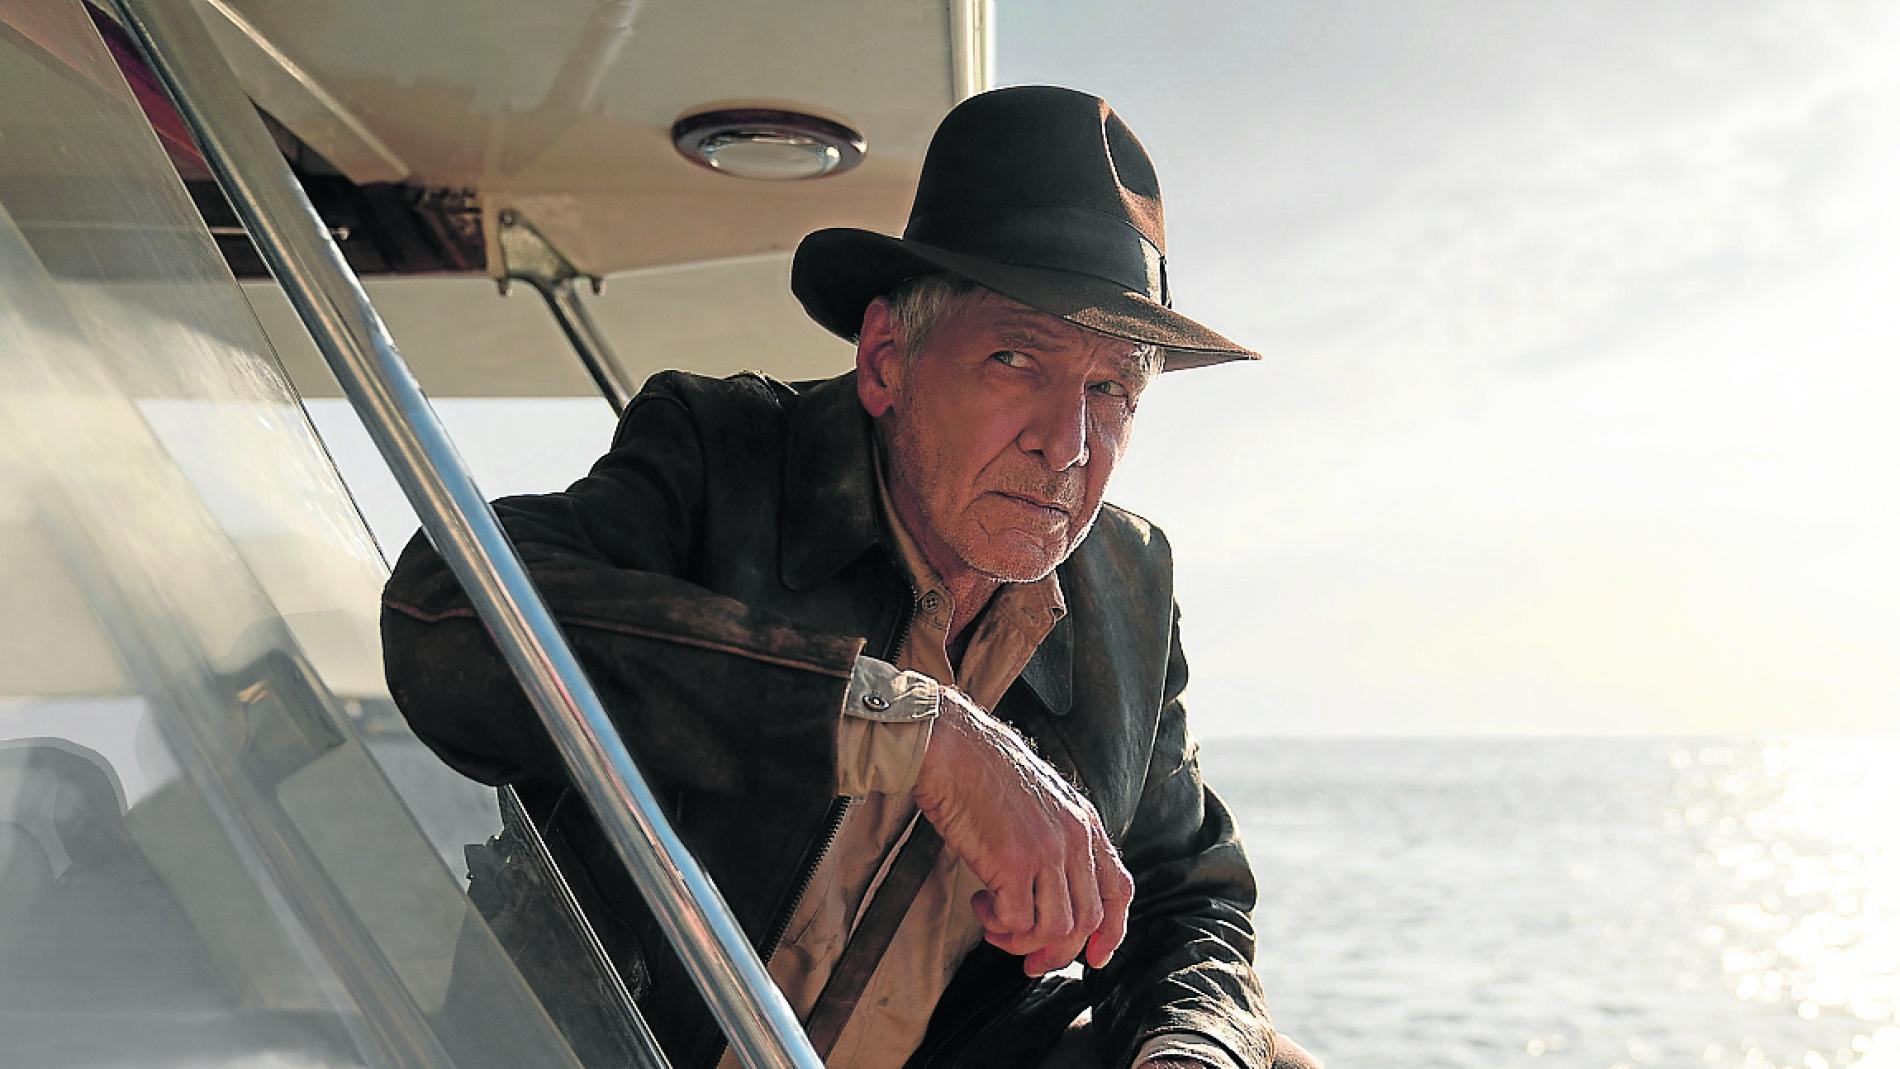 Harrison Ford no entendía por qué Indiana Jones necesitaba un látigo